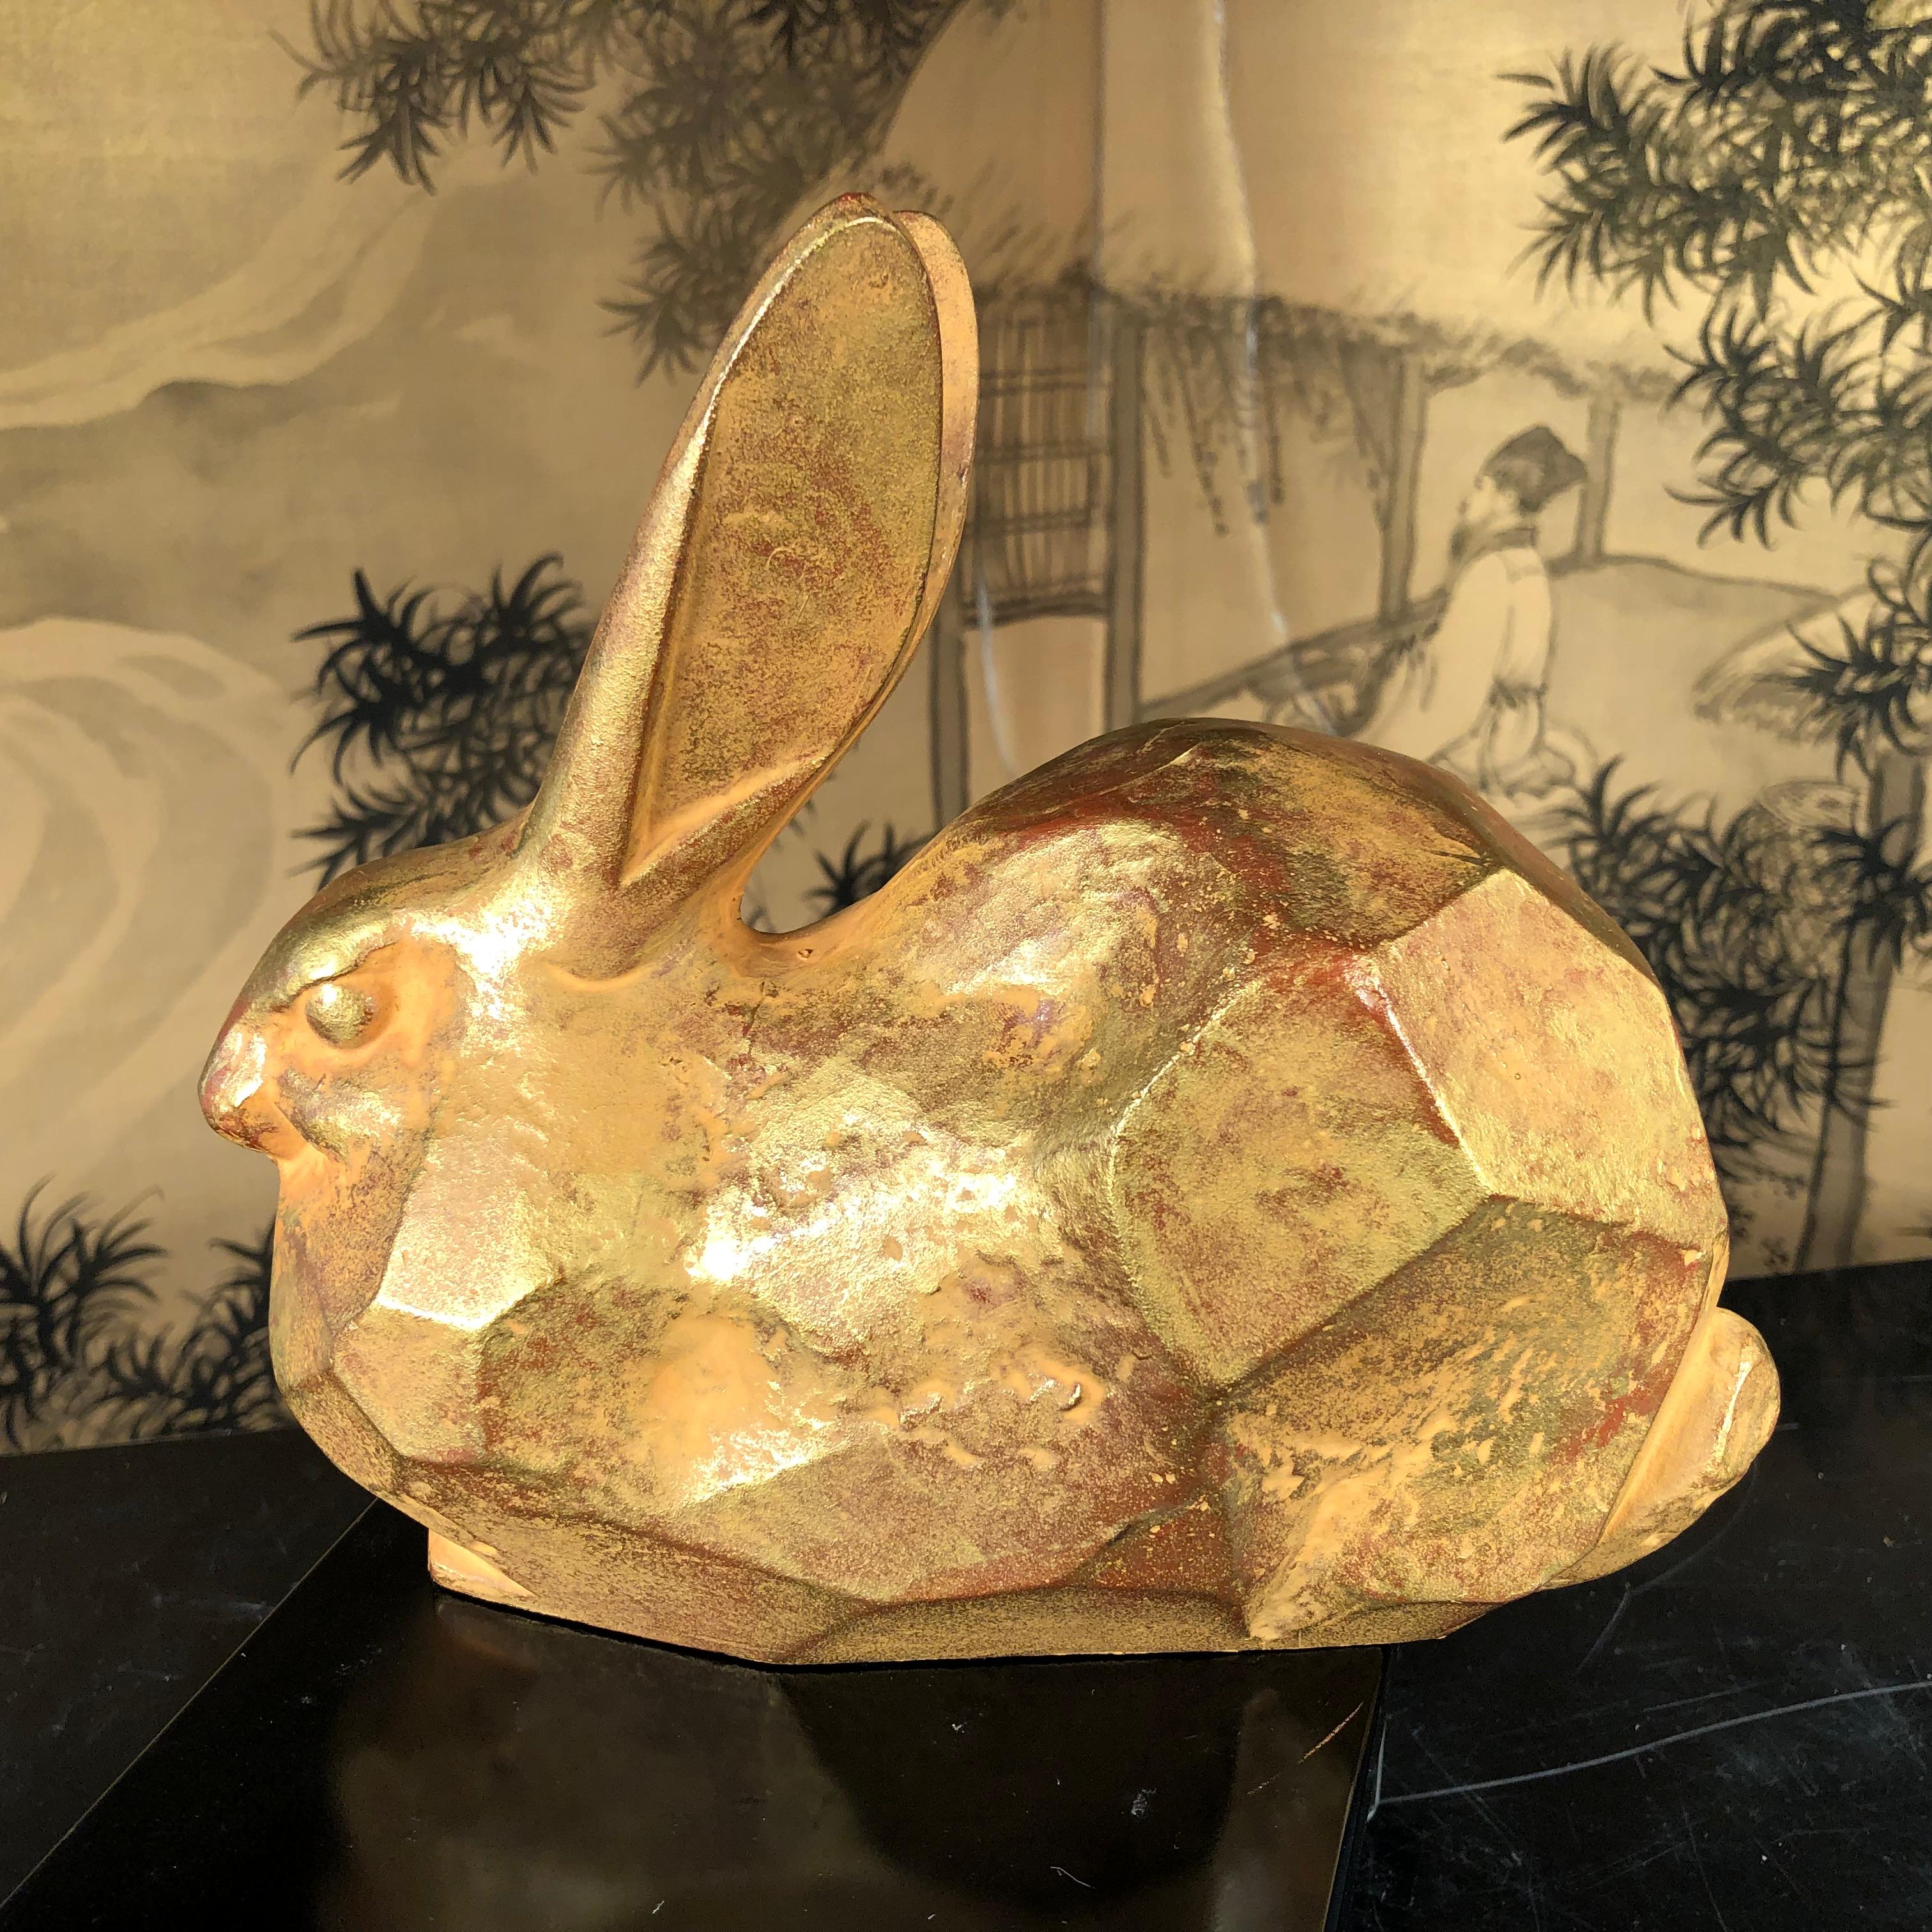 Gilt Japanese Golden Rabbit Sculpture by Famous Artist Sotaro